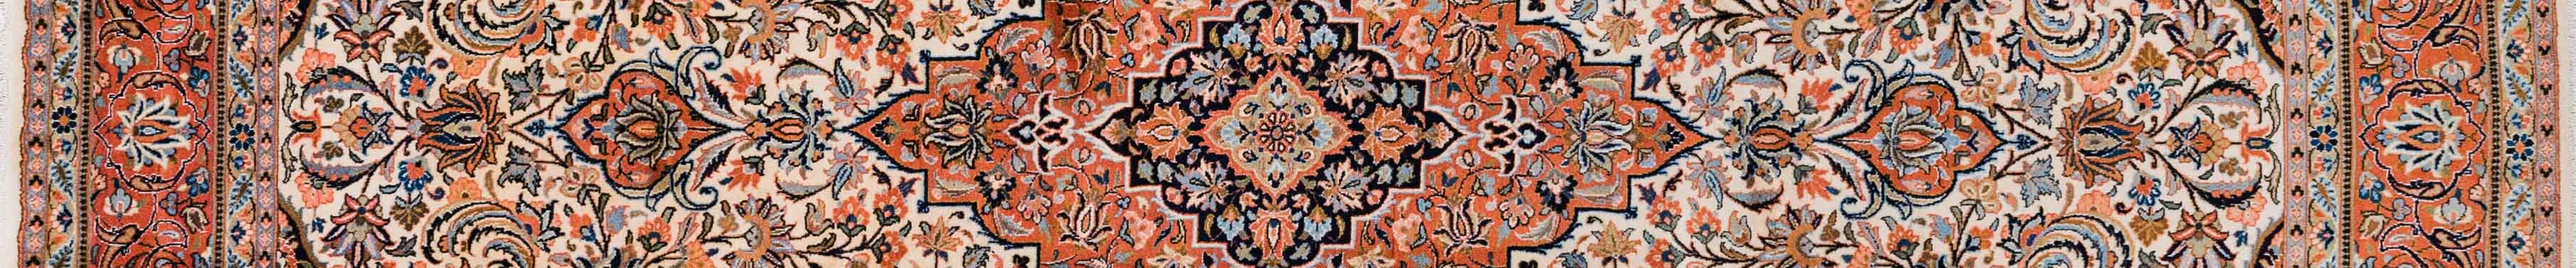 Sarouq Persian Carpet Rug N1Carpet Canada Montreal Tapis Persan 5200